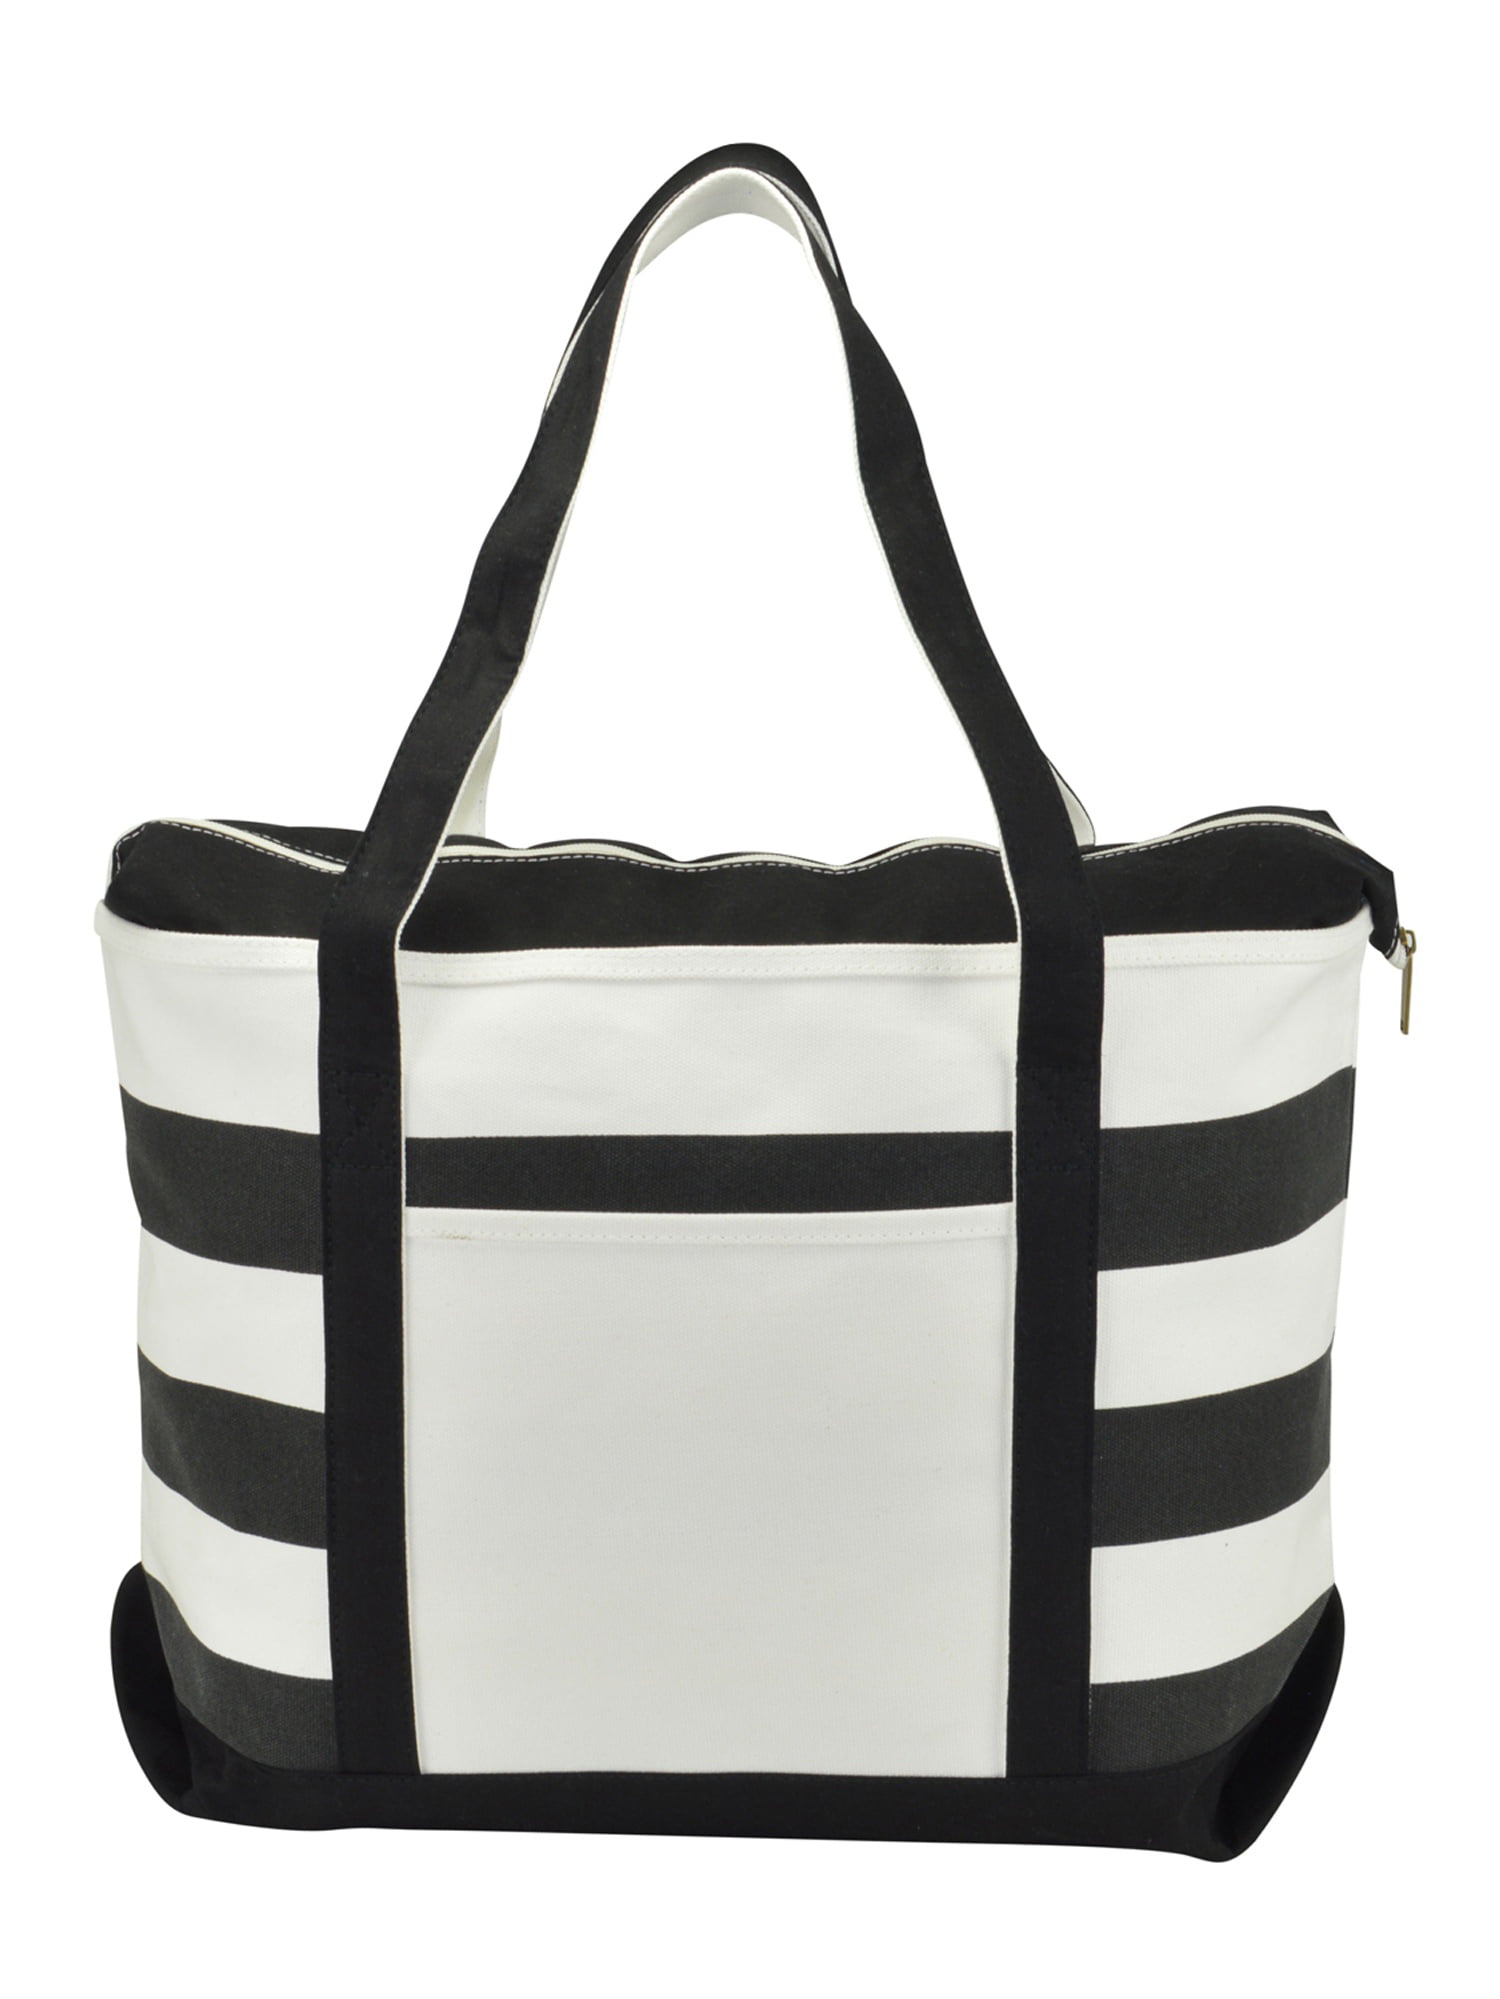 Black and white striped cotton tote bag